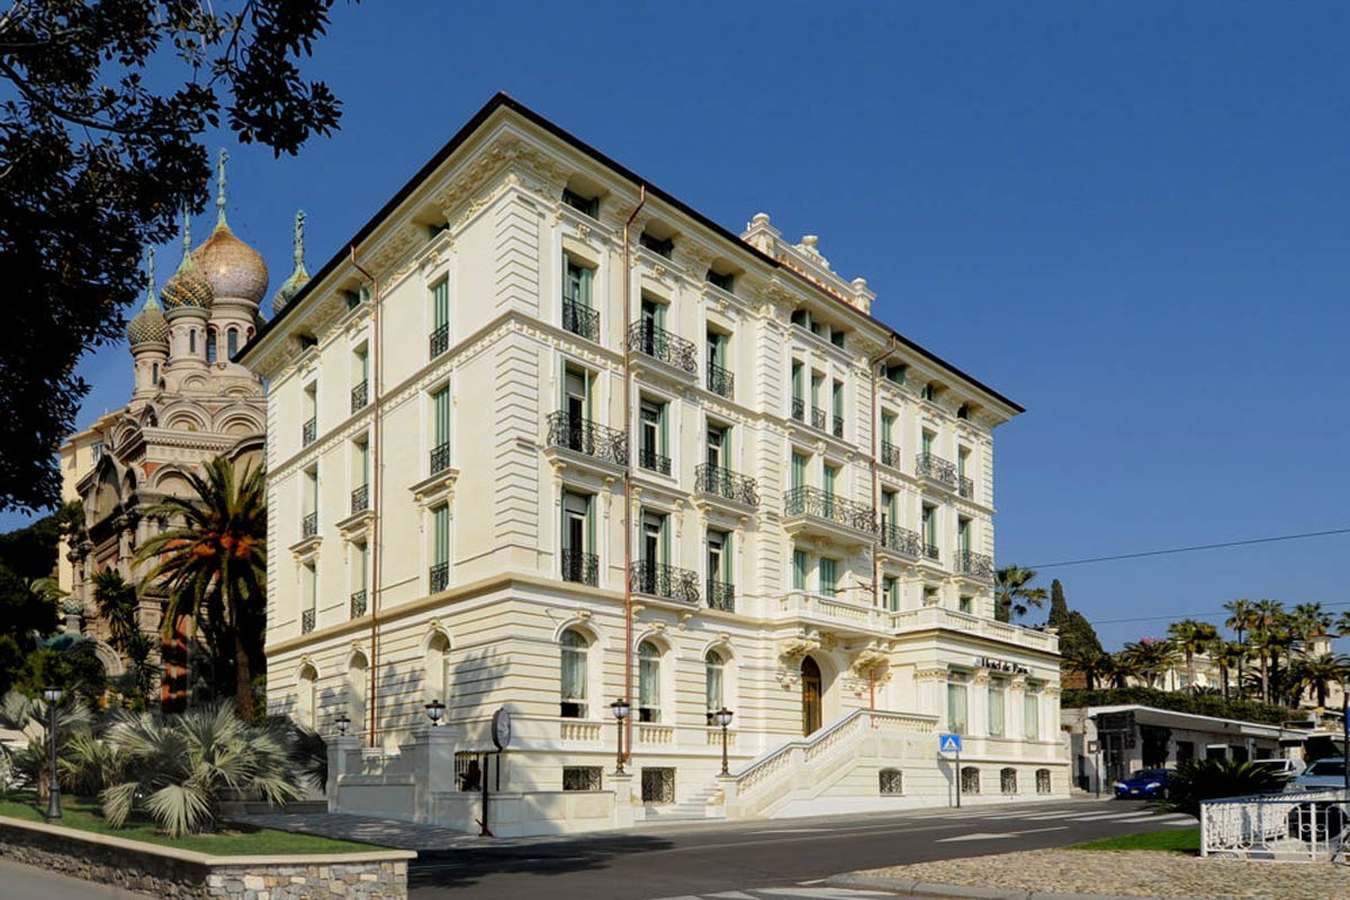 Hotel De Paris Sanremo, Liguria - Italy